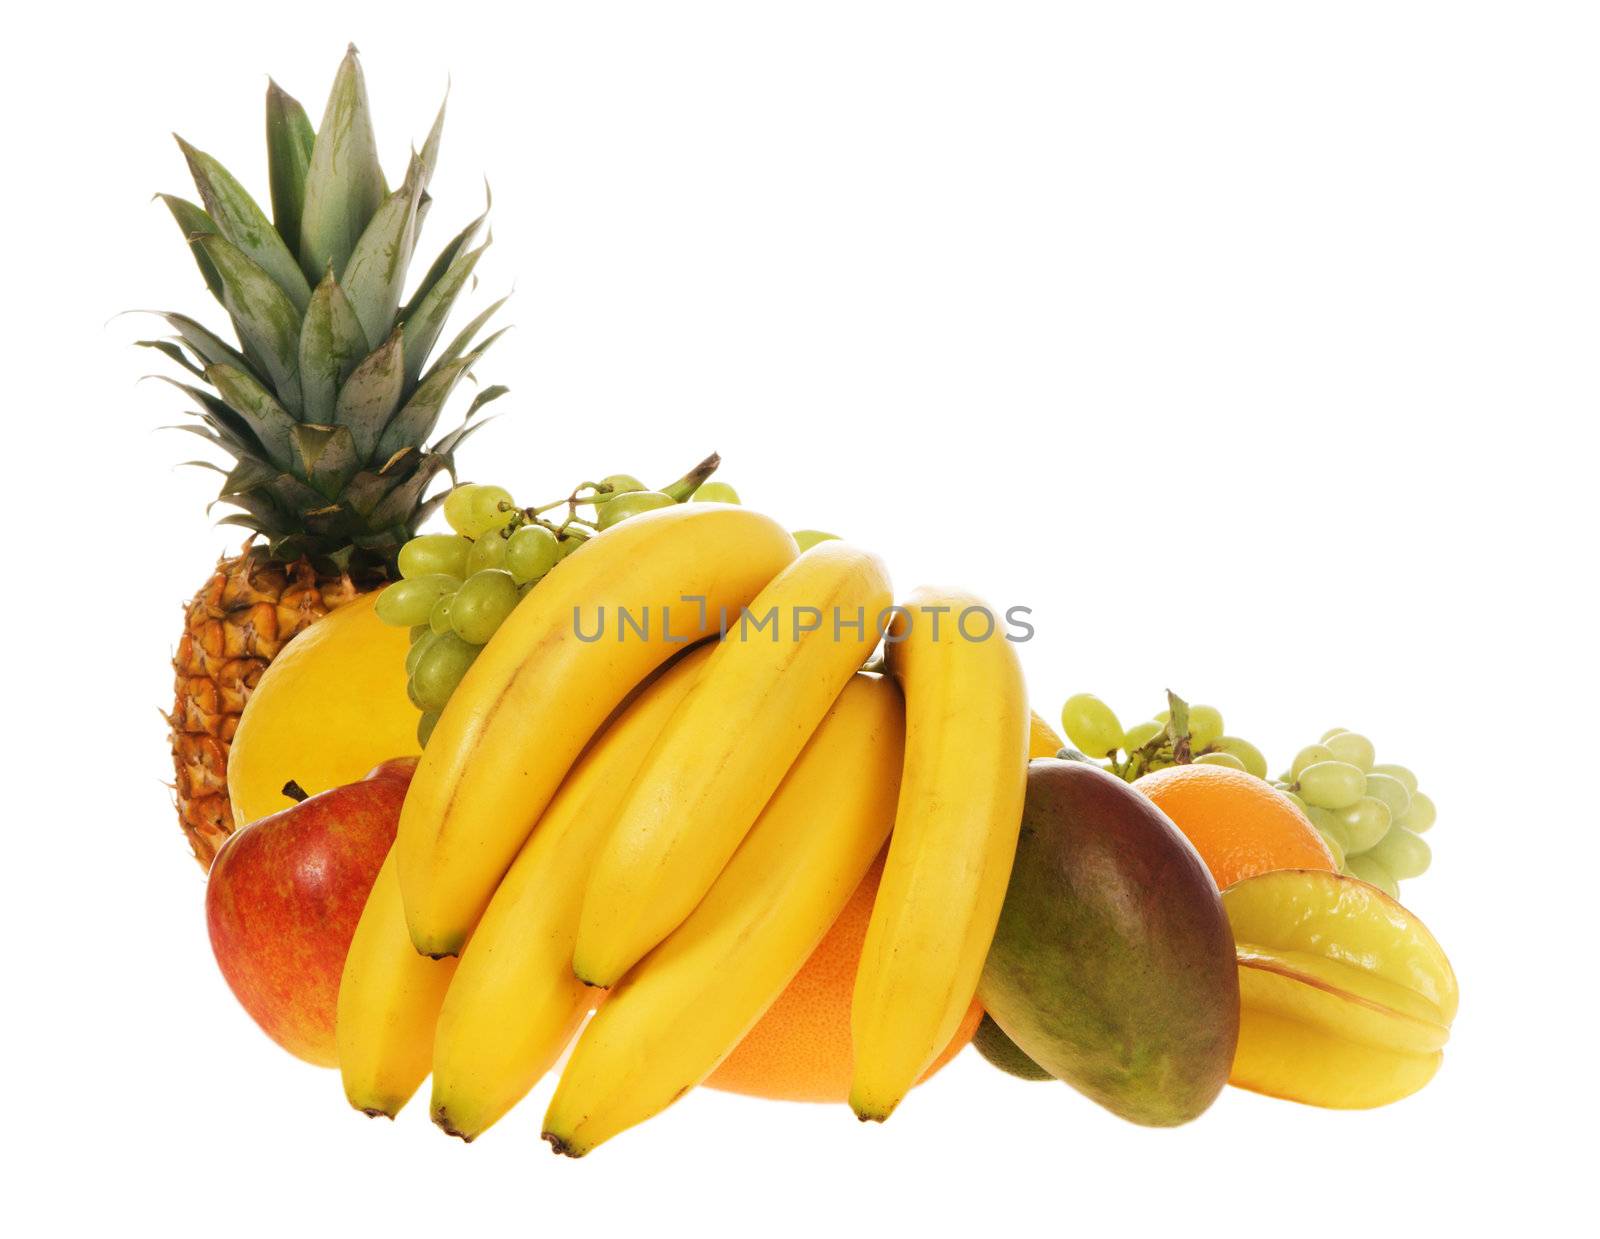 Assortment of fresh fruits isolated on white background